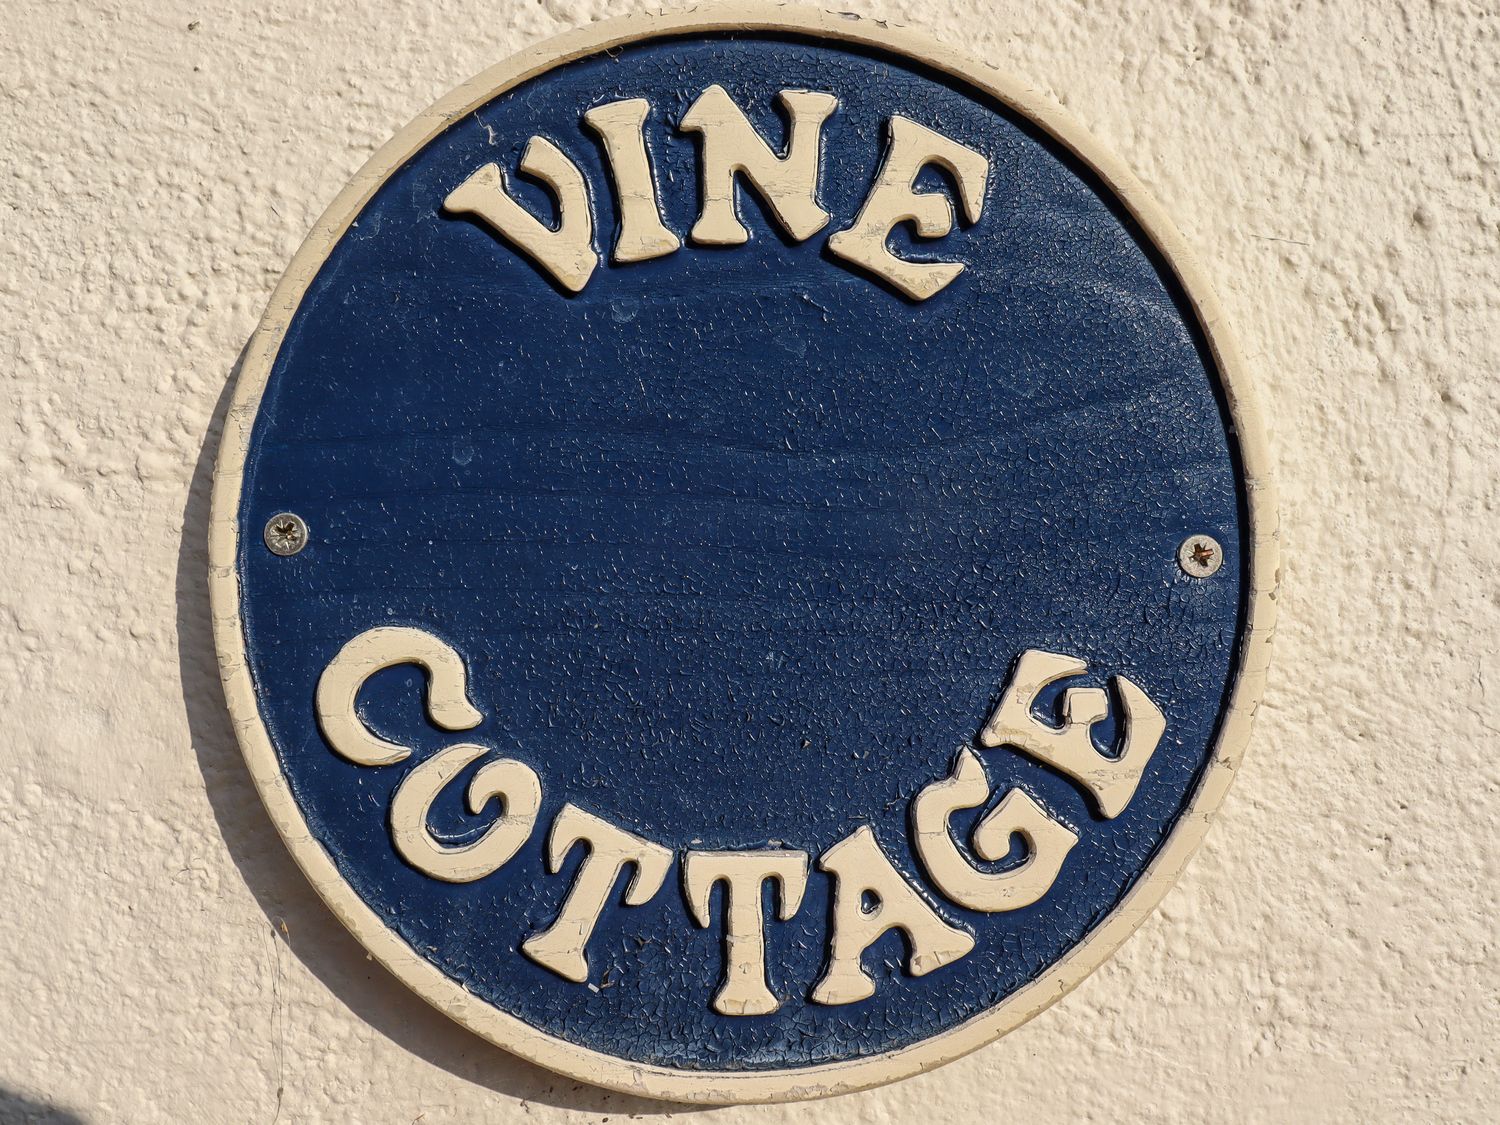 Vine Cottage, East Anglia